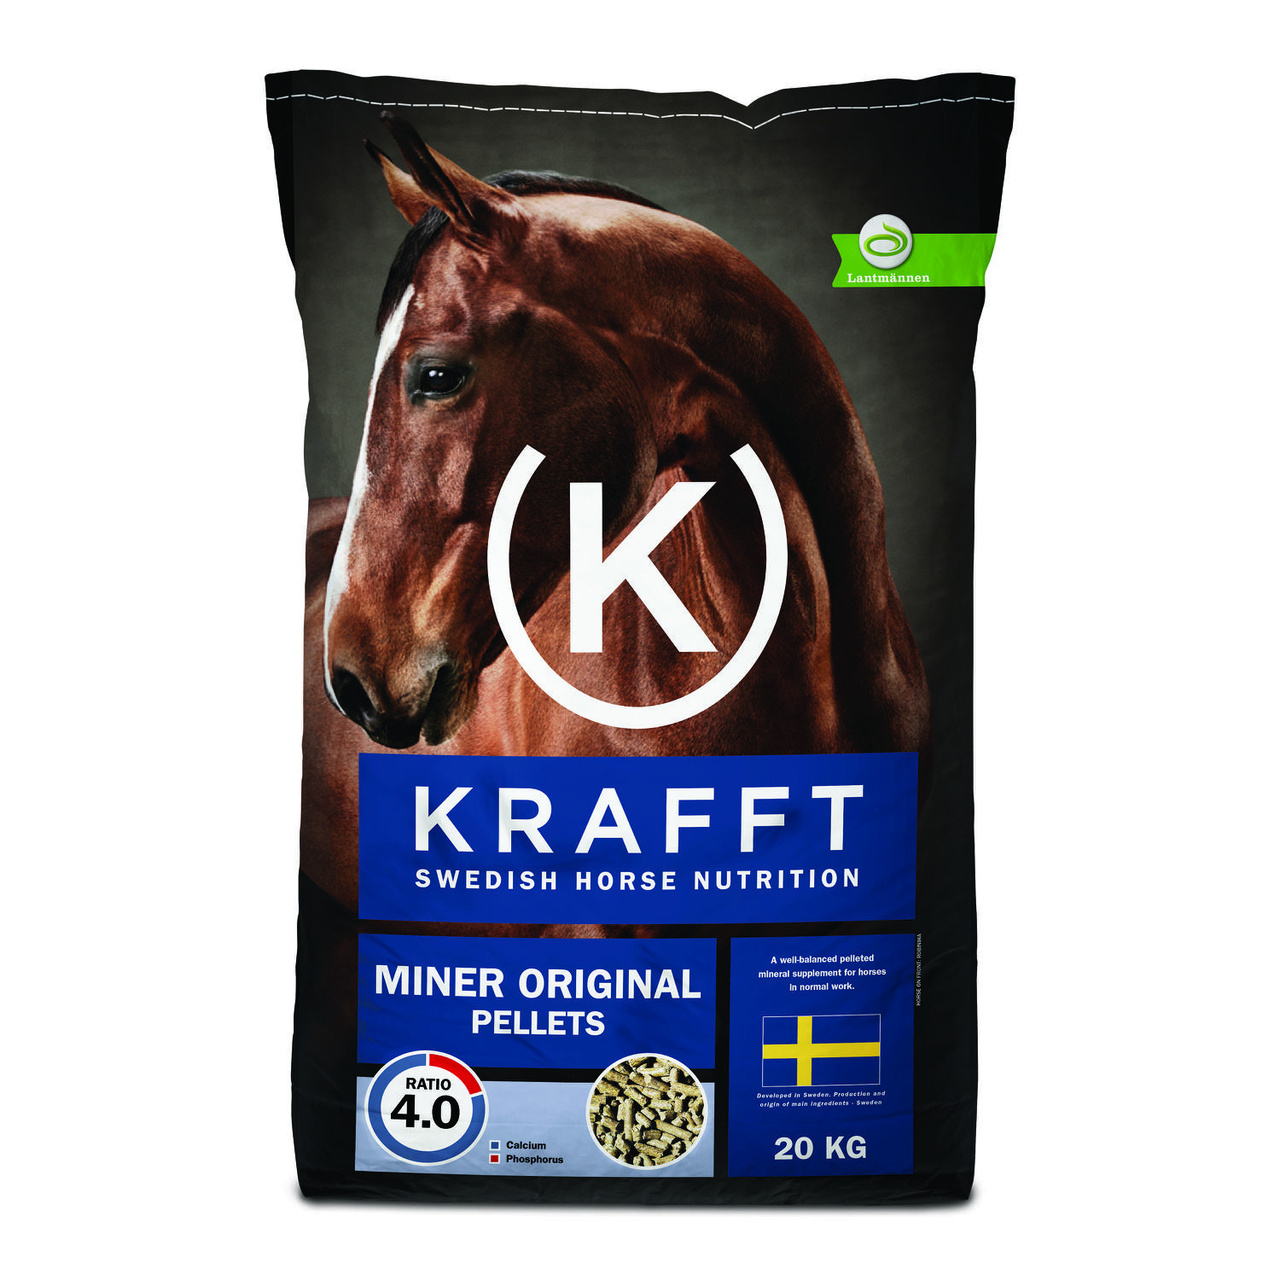 Krafft miner original pellets 20kg